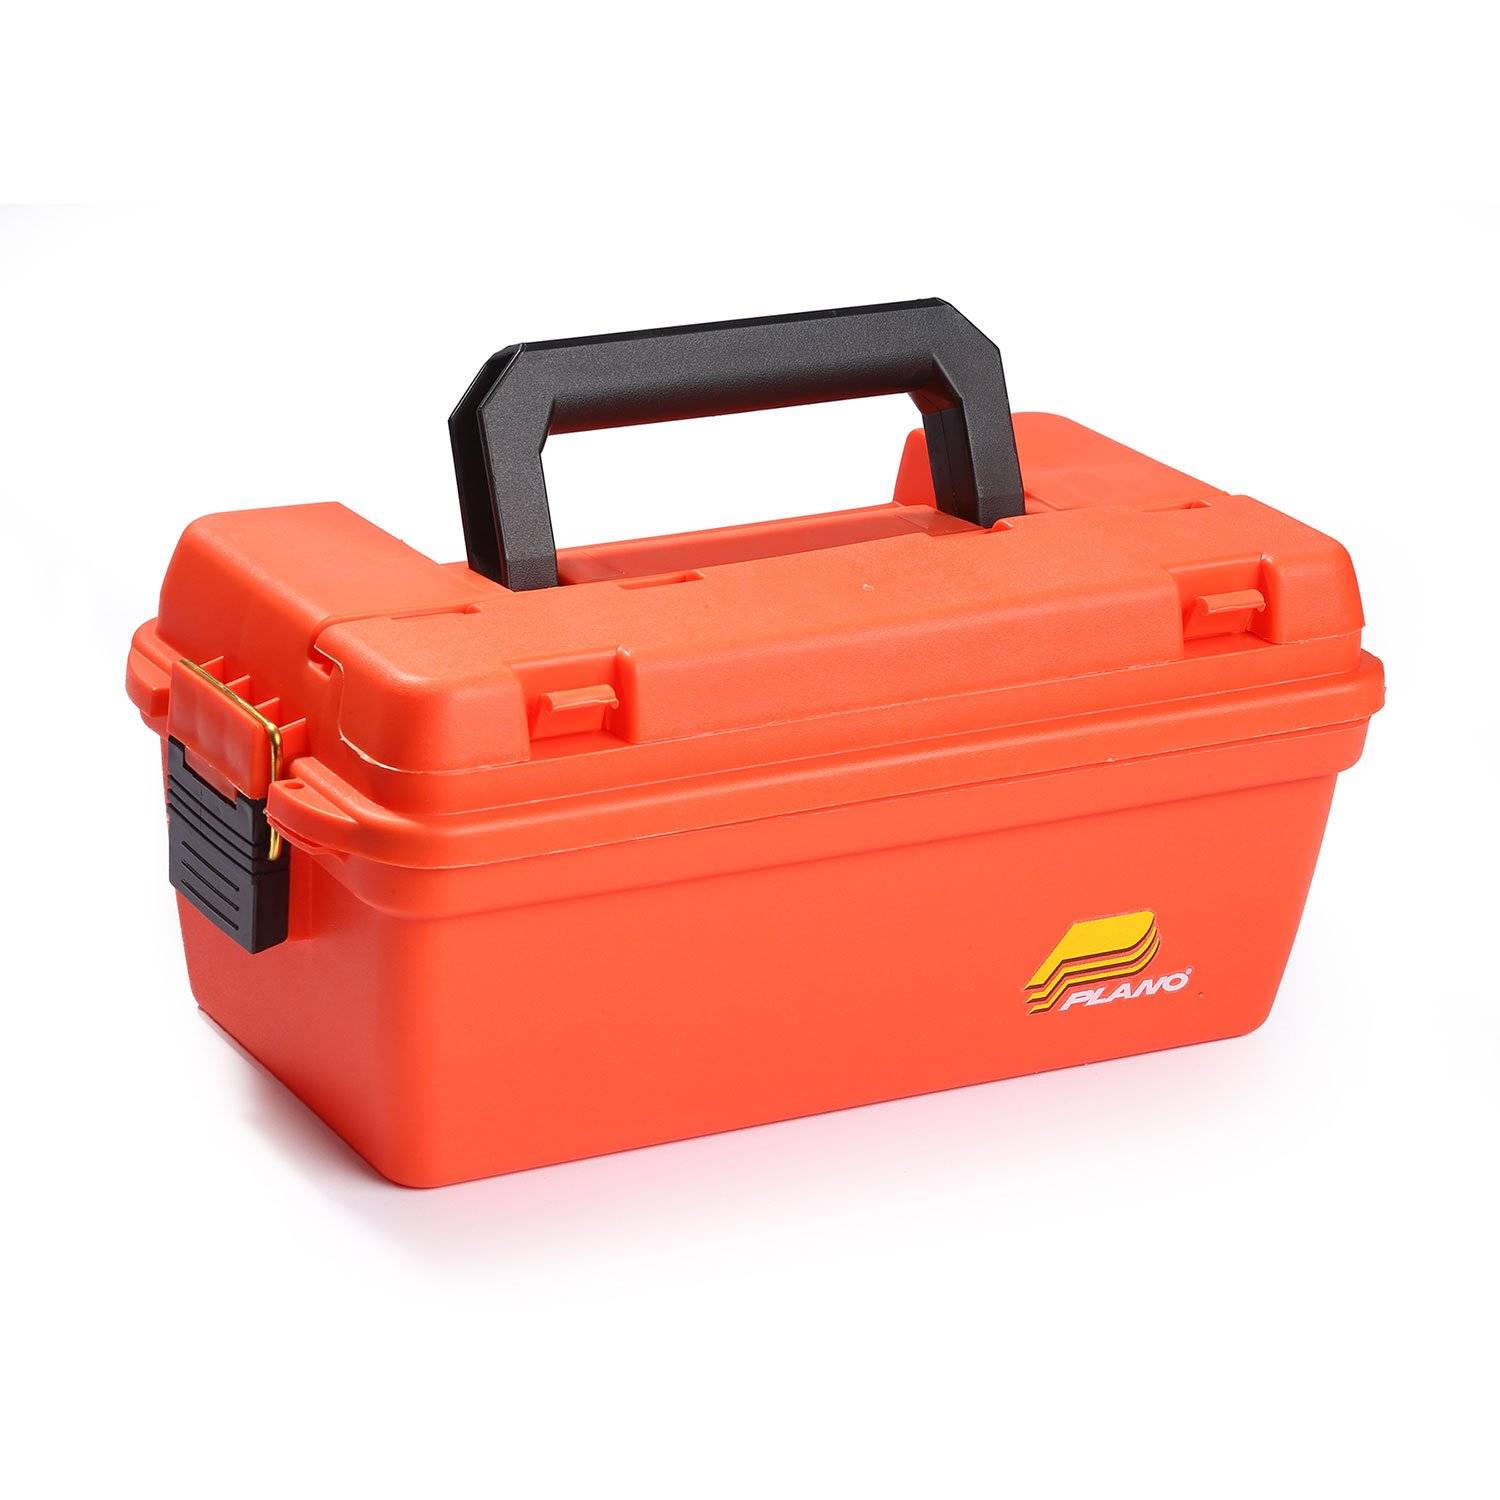 Plano Emergency Supply Box